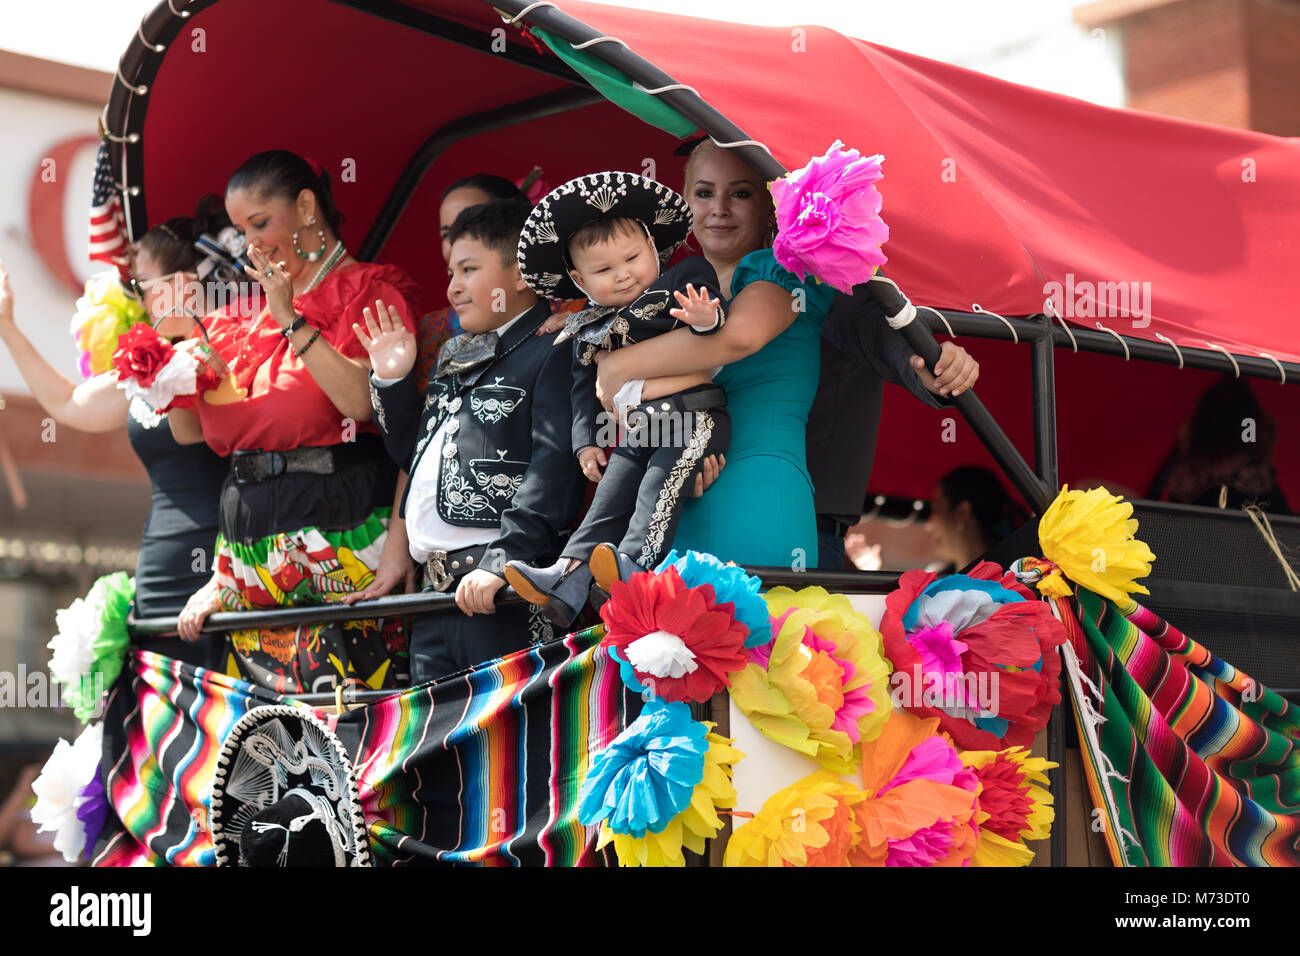 Brownsville, Texas, USA - Le 24 février 2018, Grand Parade internationale fait partie du Charro Jours Fiesta - Fiestas Mexicanas, un festival national Banque D'Images